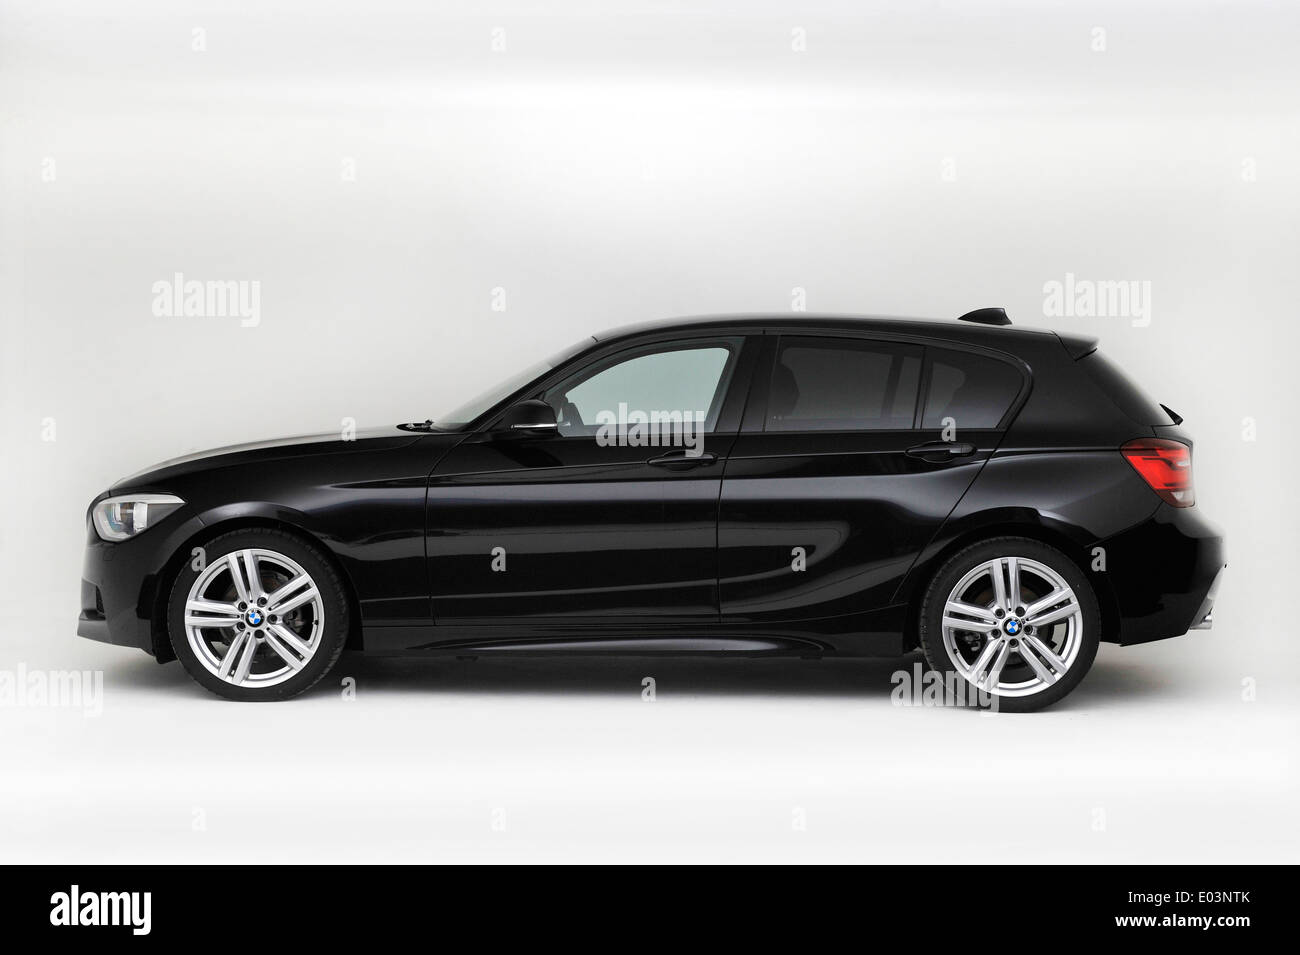 2013 BMW 118d Stock Photo - Alamy